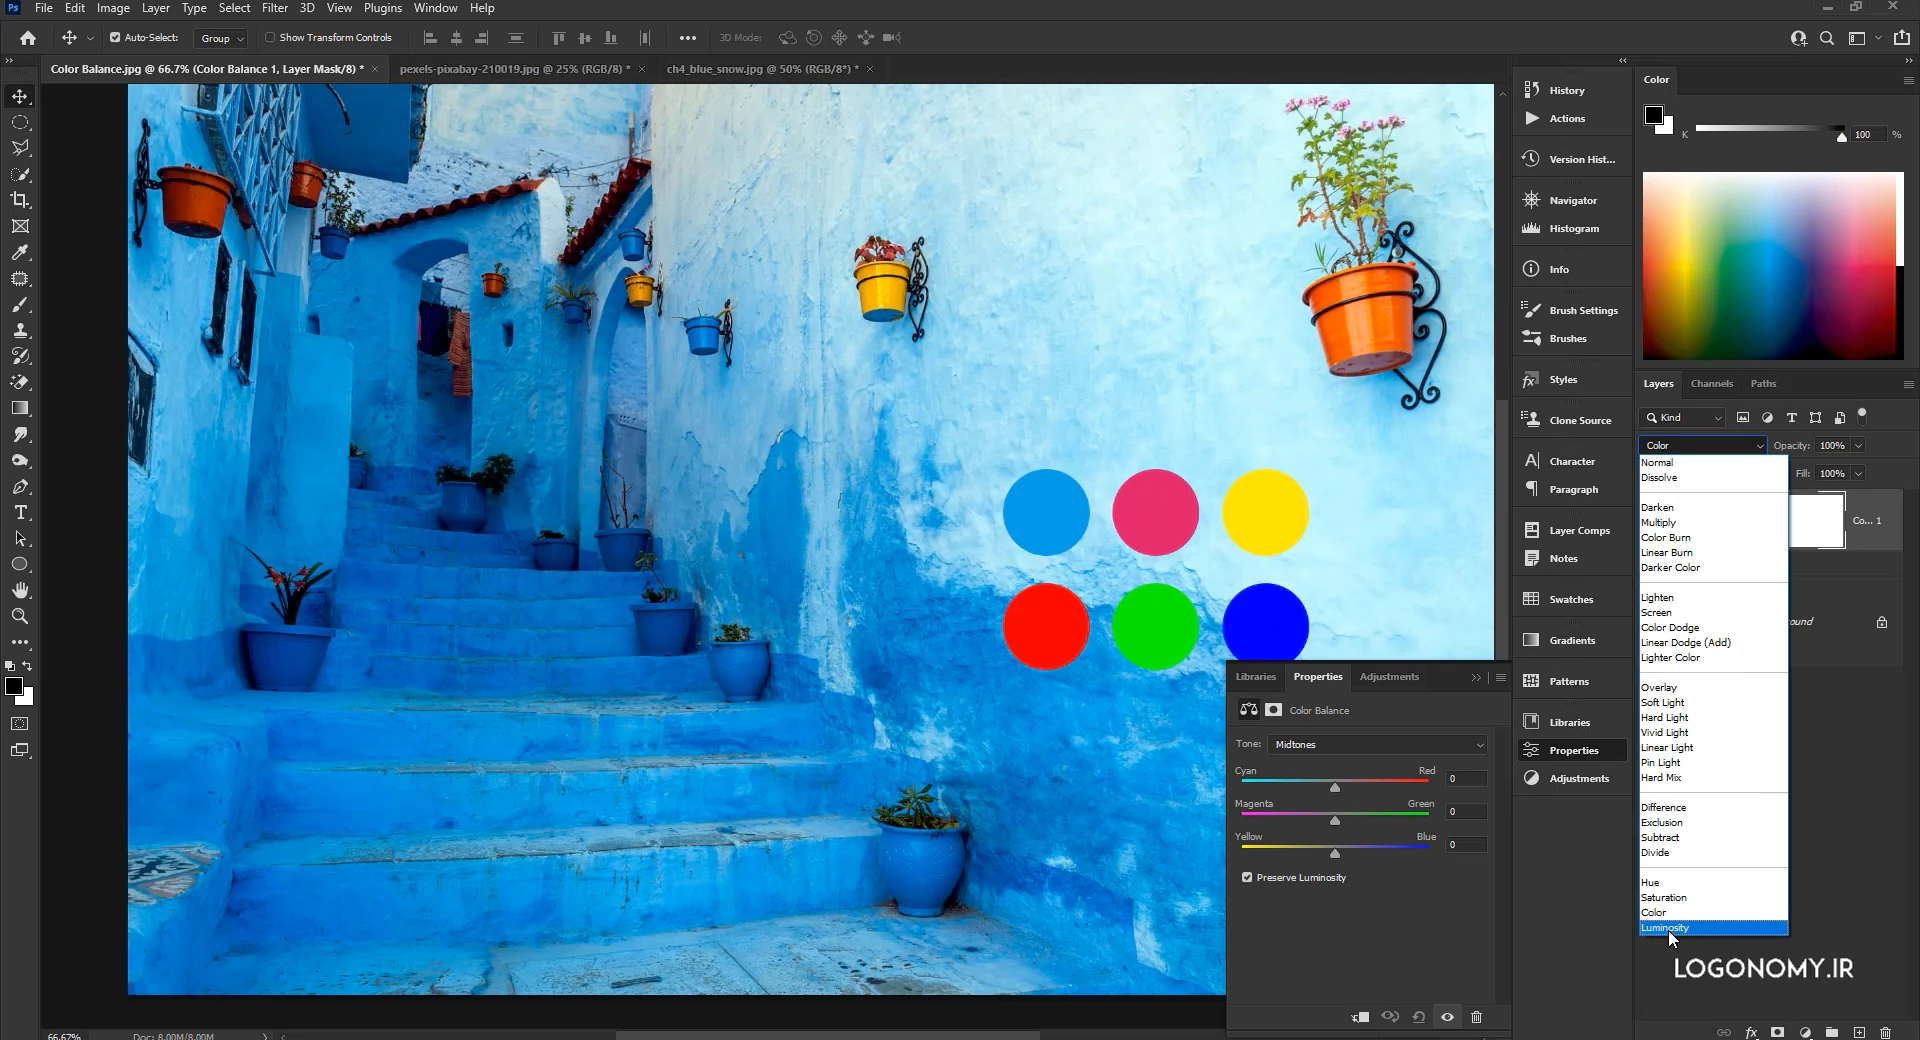 اصلاح رنگ عکس با فرمان کالر بالانس (Color Balance) در برنامه فتوشاپ